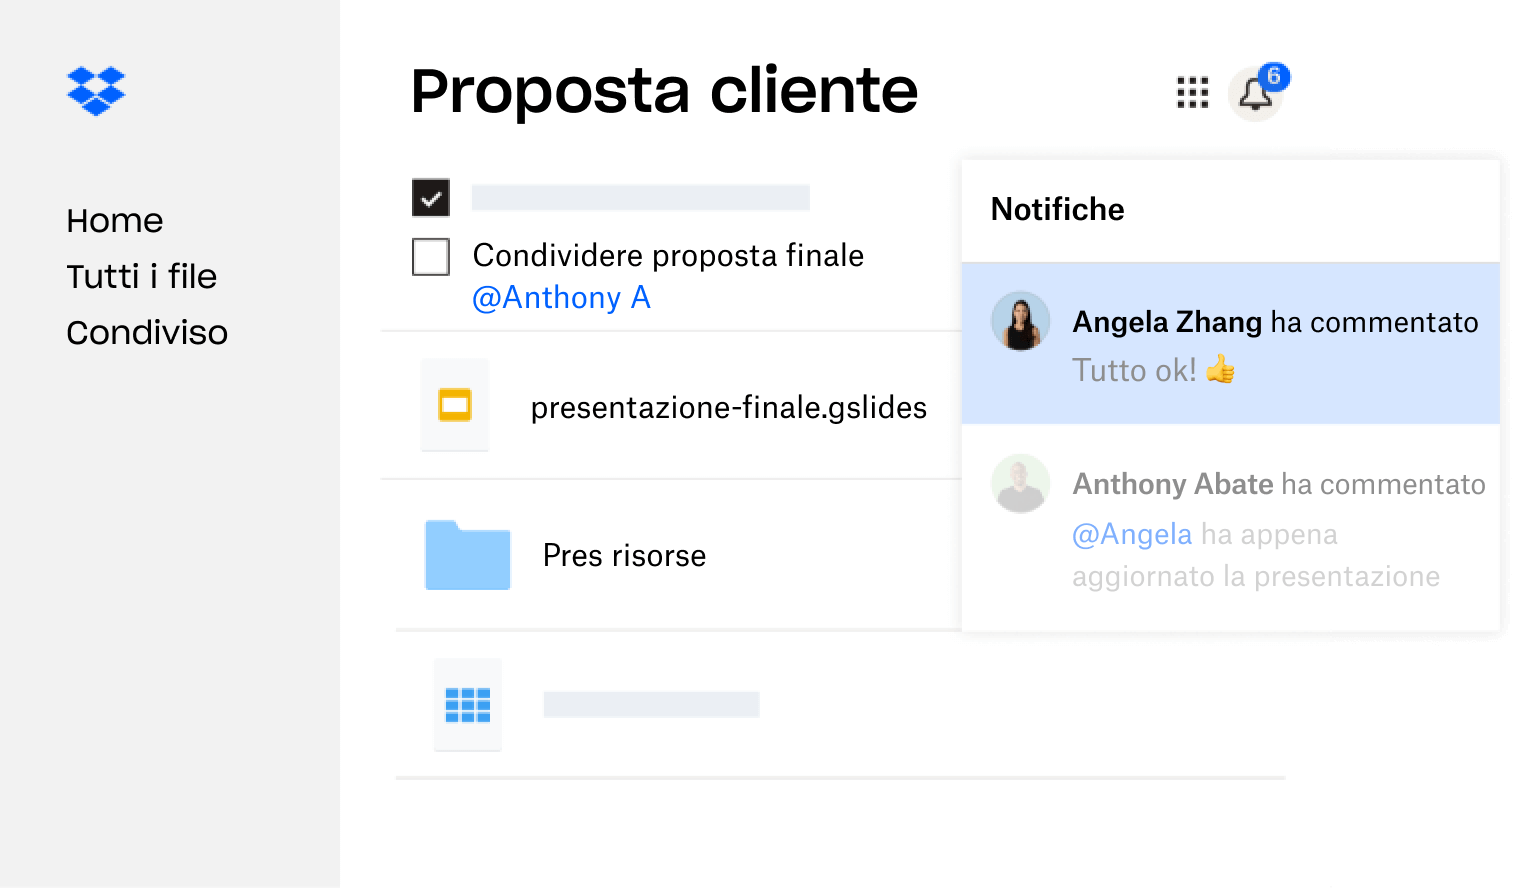 Una proposta per un cliente creata in Dropbox è stata condivisa con più utenti che hanno lasciato un feedback.